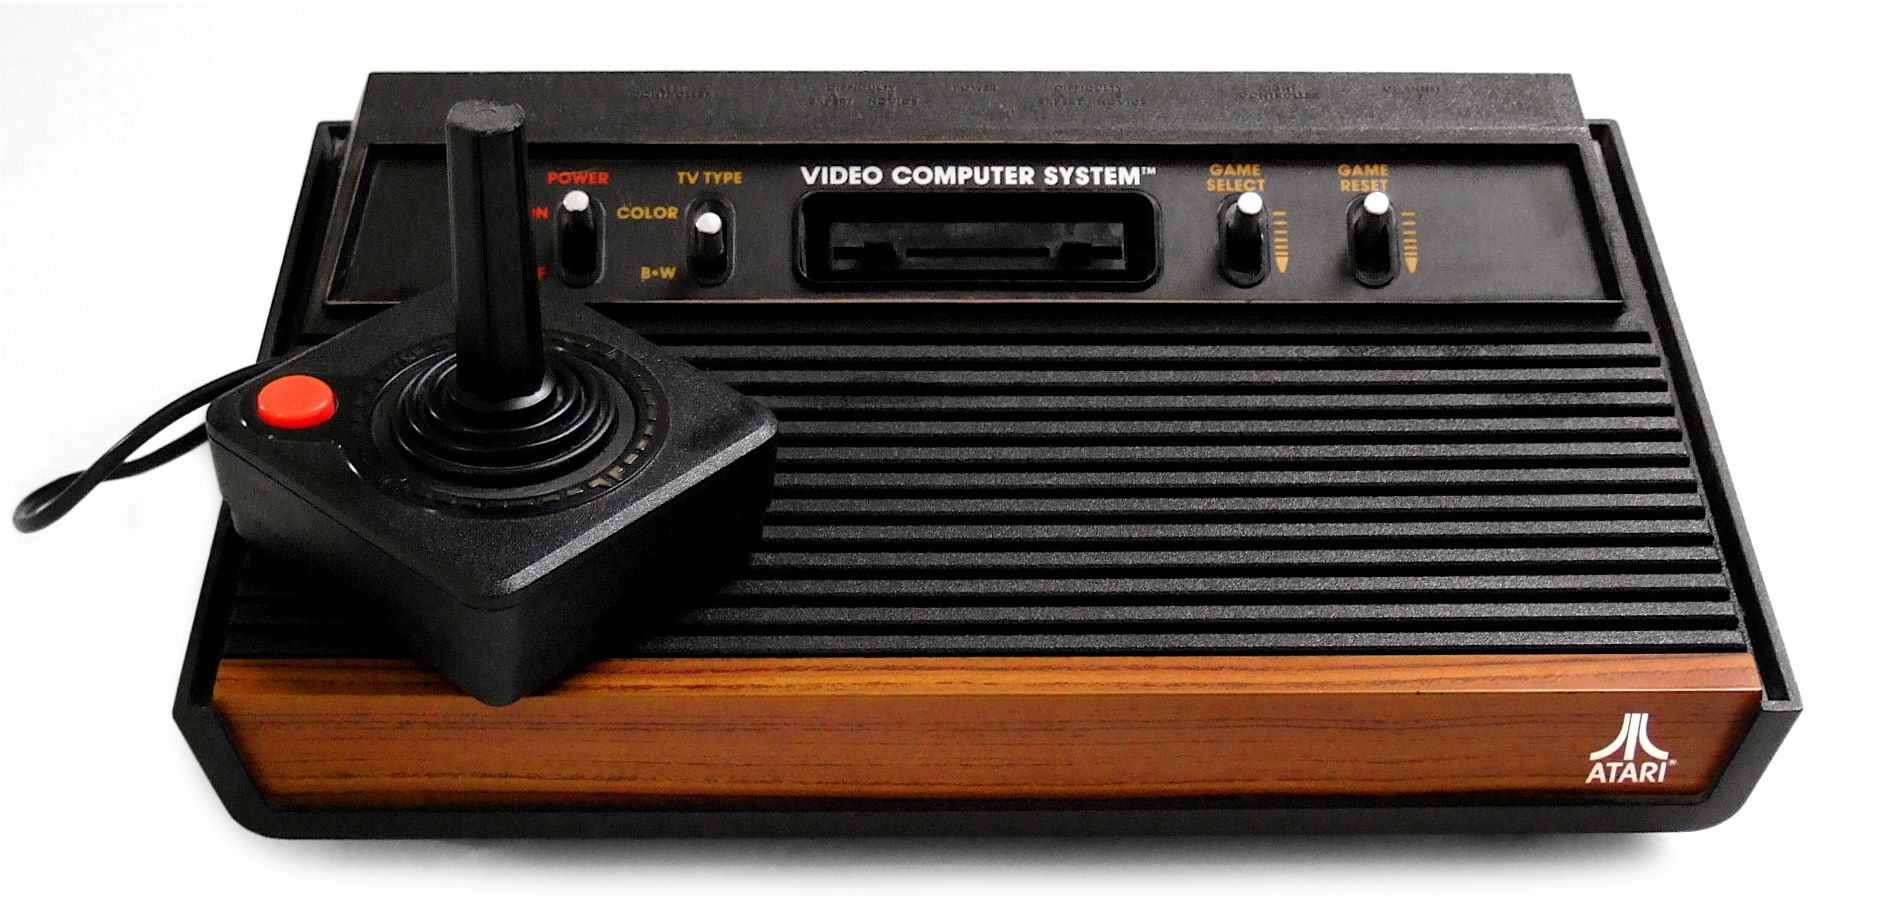 Atari cumple 50 años y el padrino de los videojuegos habla sobre cómo cambiar el mundo